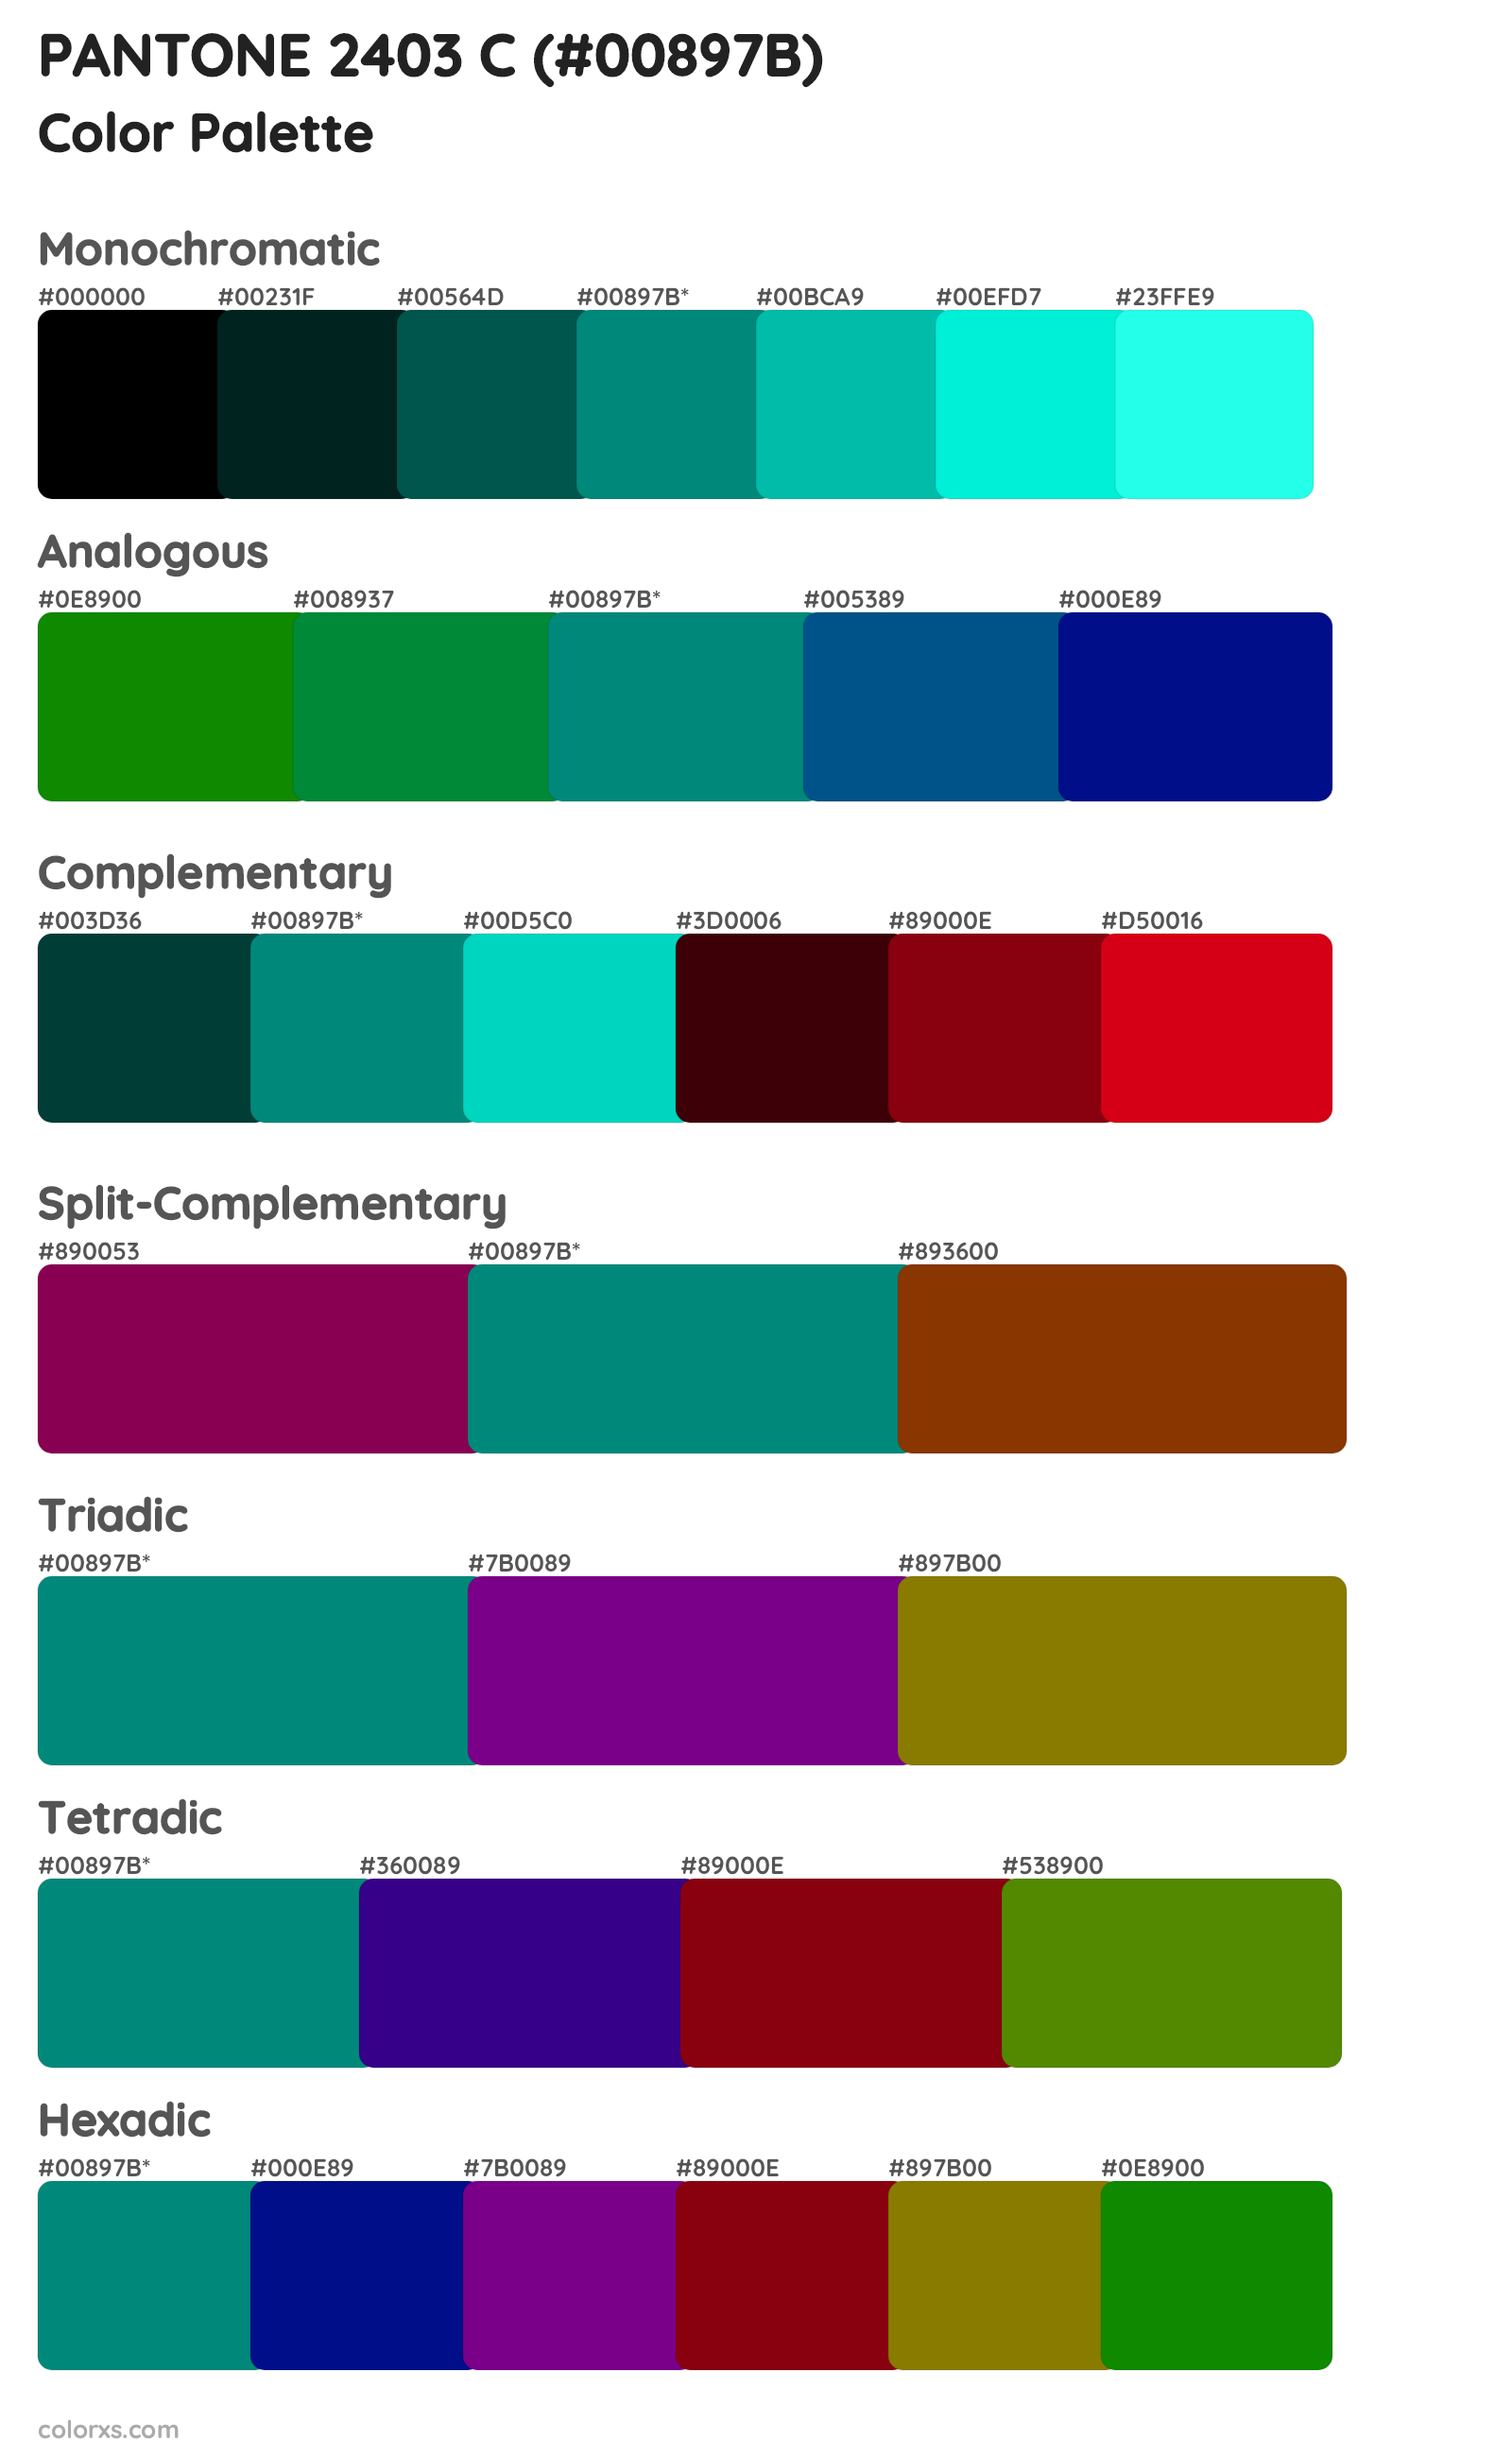 PANTONE 2403 C Color Scheme Palettes